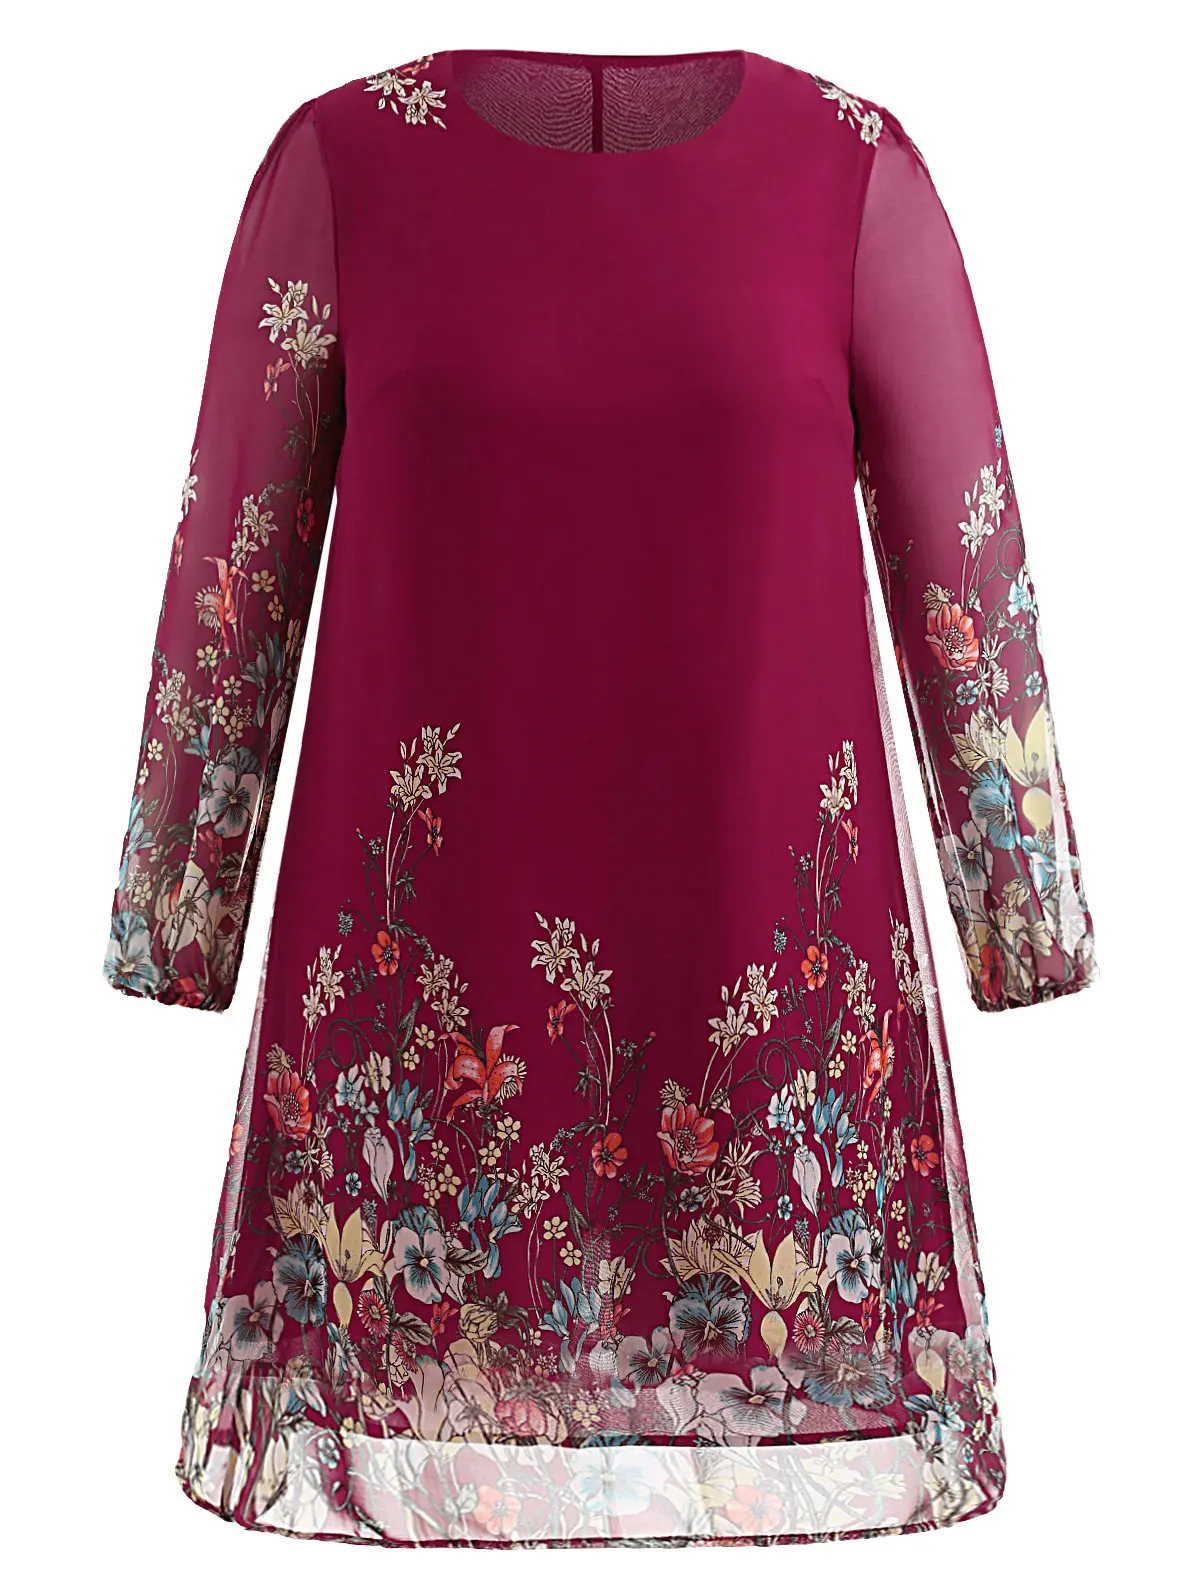 Wipalo Цветочное платье свободного кроя с длинными рукавами, полупрозрачное шифоновое платье 5XL, большой размер, туника